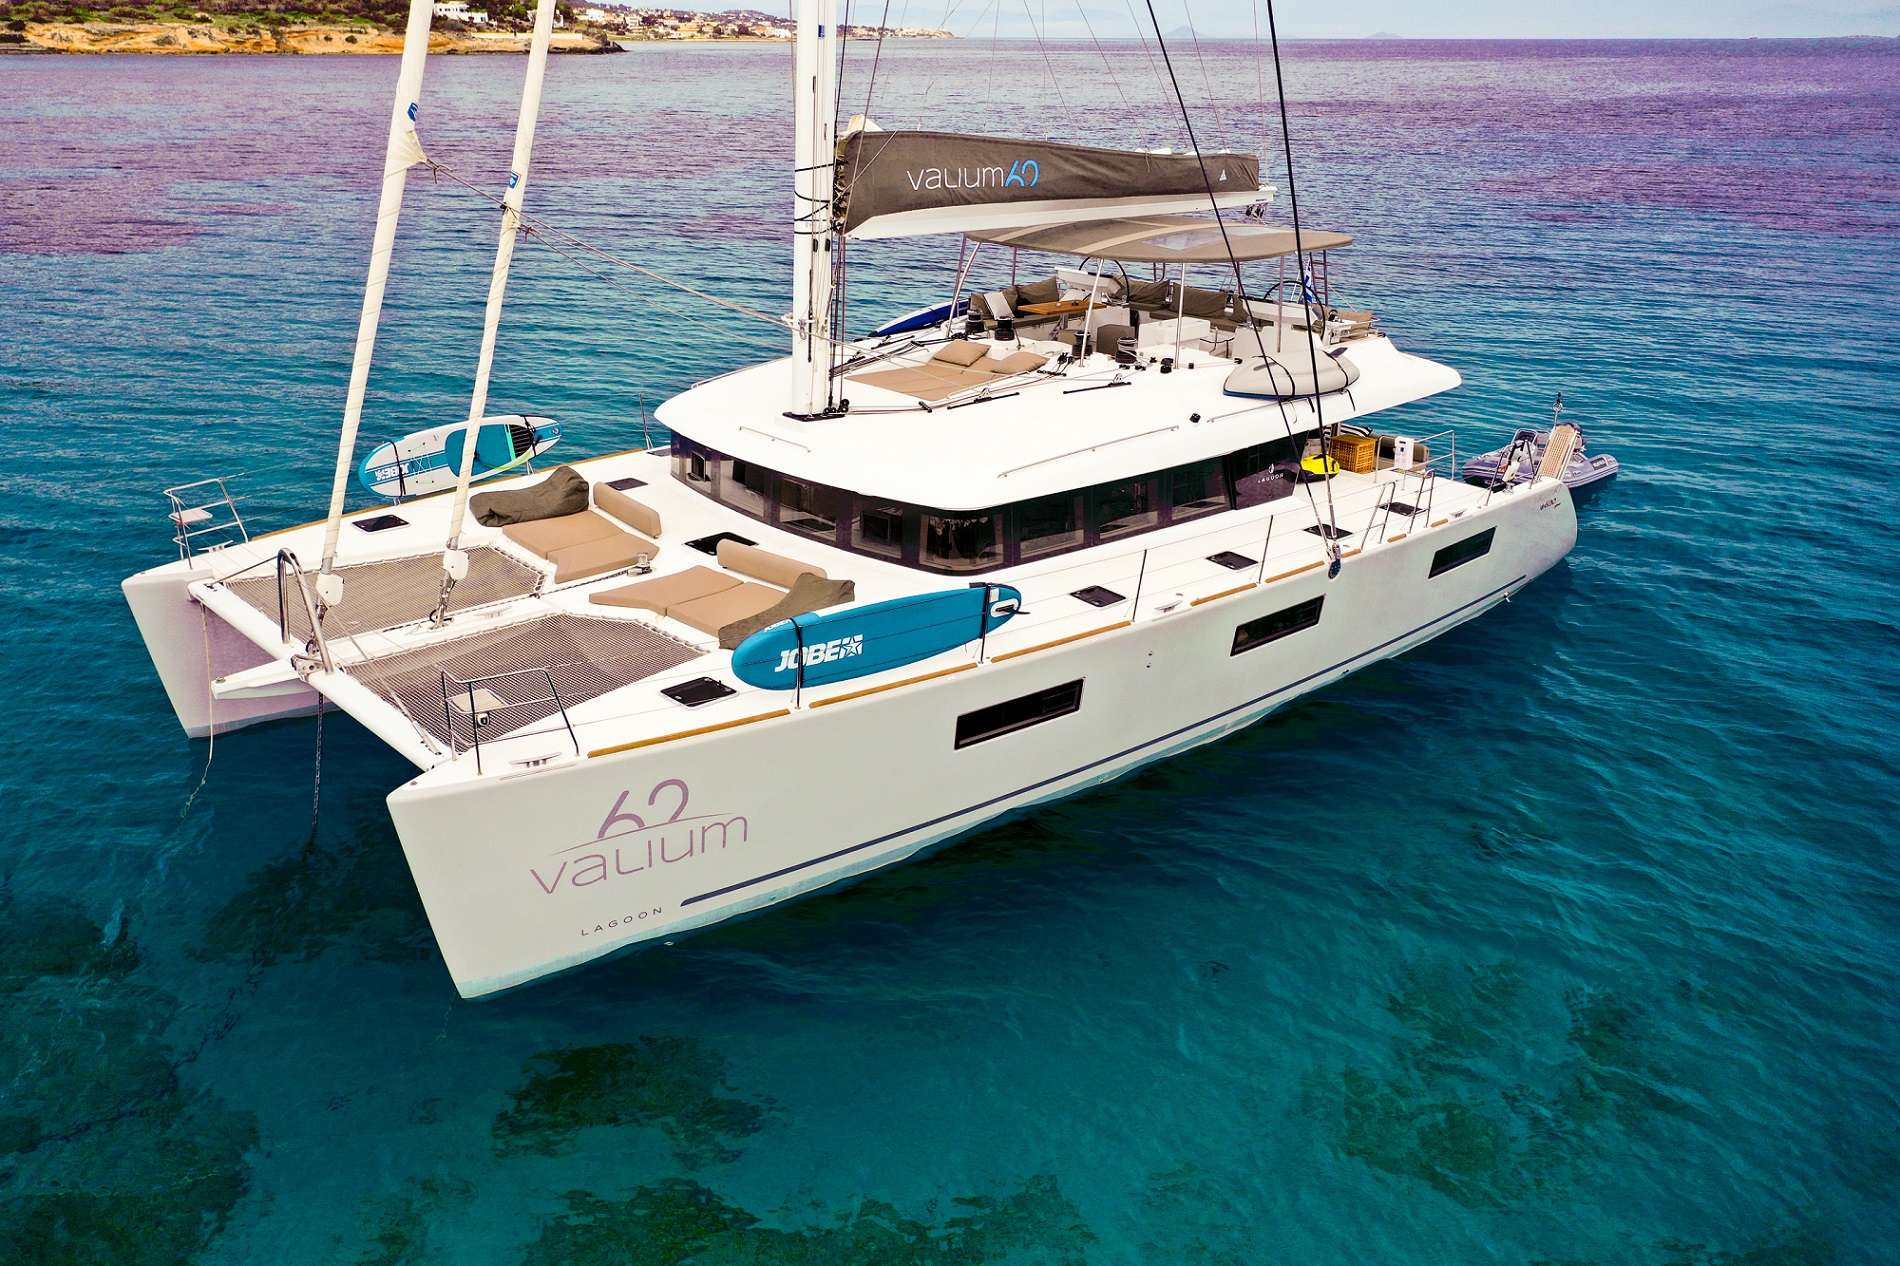 valium62 - Yacht Charter Porto Cheli & Boat hire in Greece 2